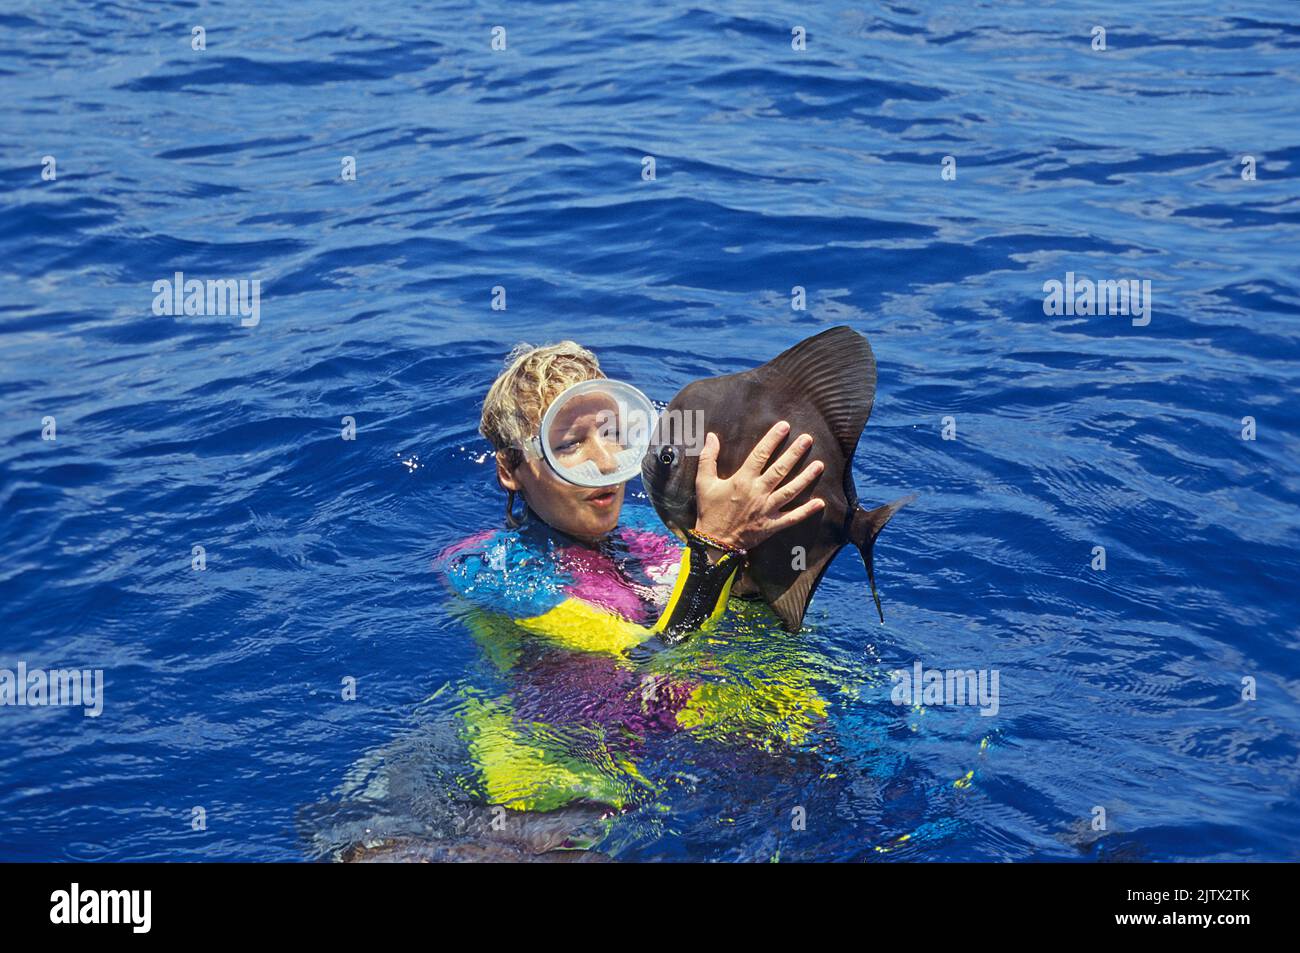 Batfish (Platax teira) saltando dall'acqua direttamente nelle mani di uno snorkeler, accesso riflessivo, Maldive, Oceano Indiano, Asia Foto Stock